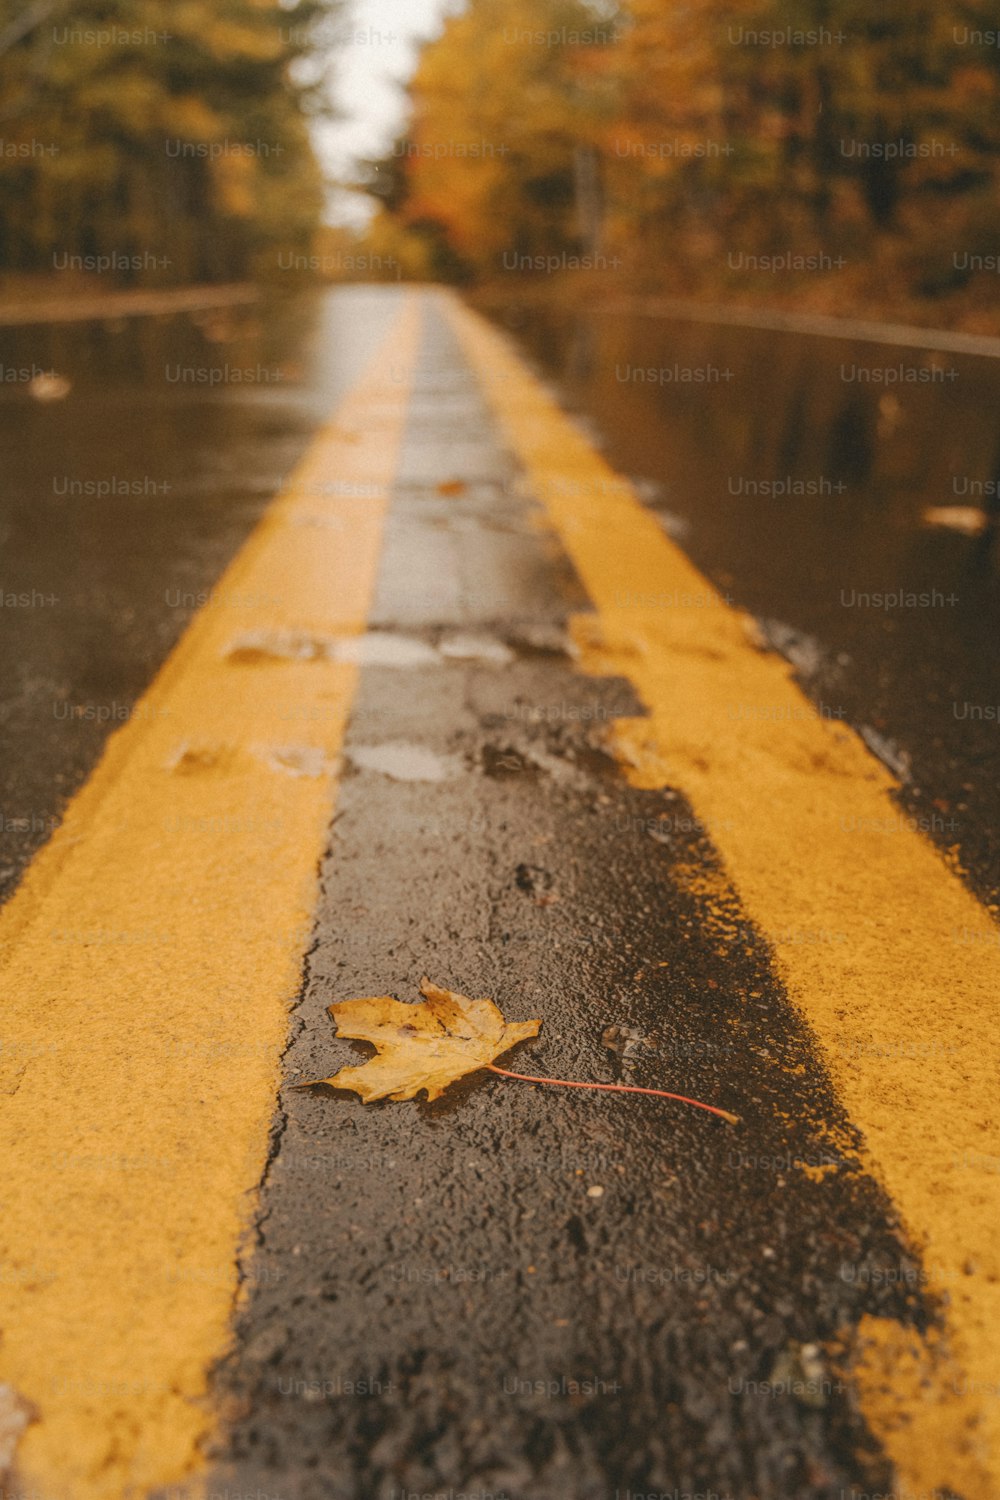 Una calle mojada con una línea amarilla pintada